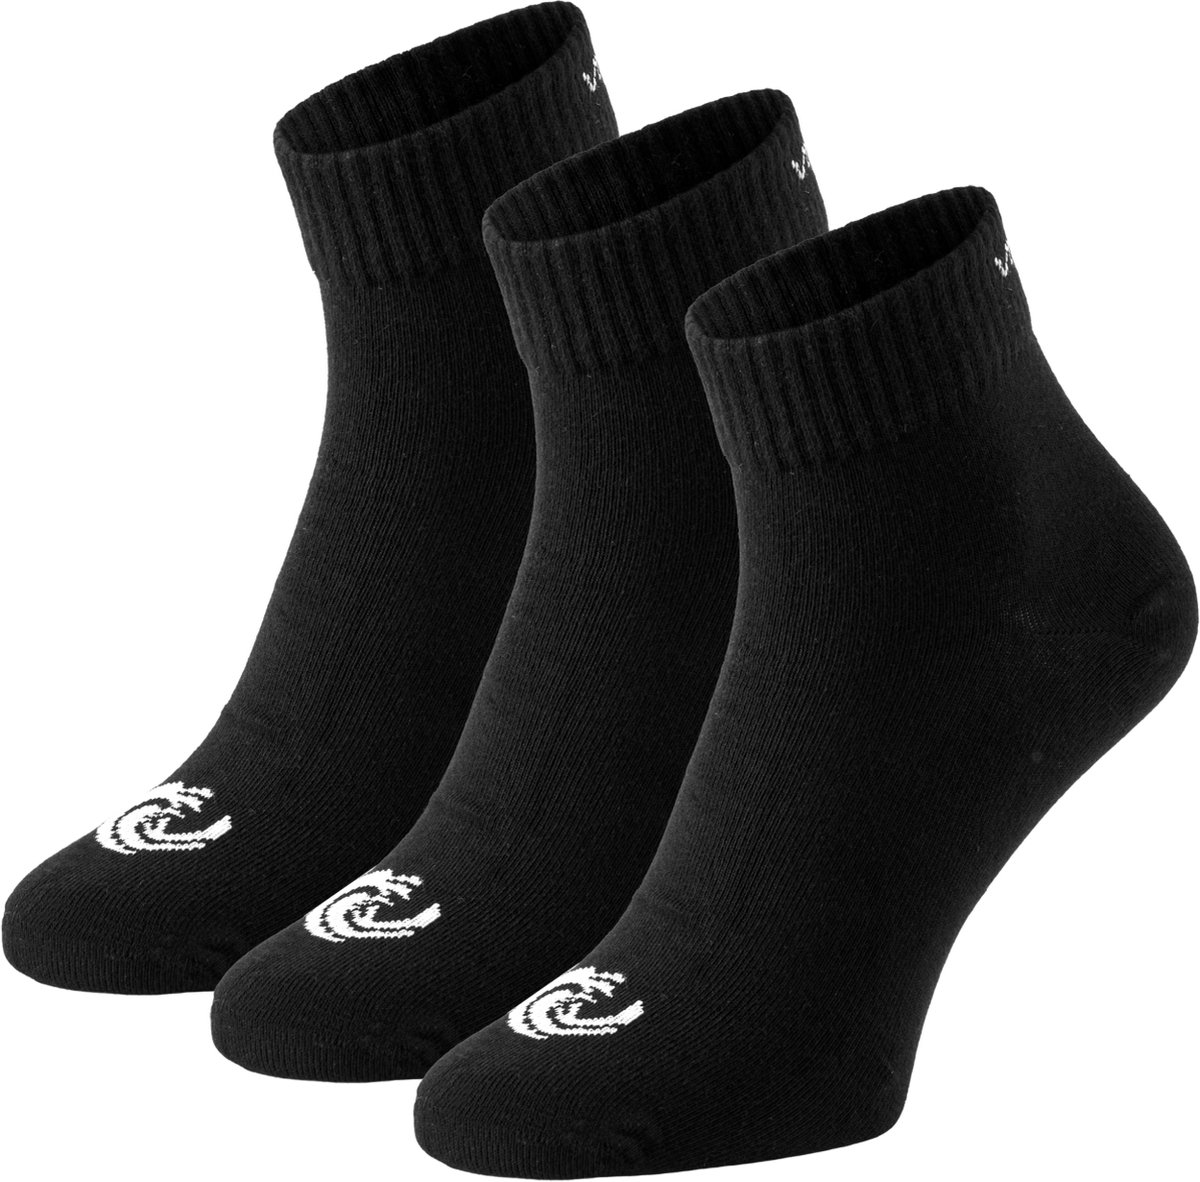 Vinnie-G Quarter Sokken Zwart - 3 paar Zwarte Enkel sokken - Unisex - Maat 35/38